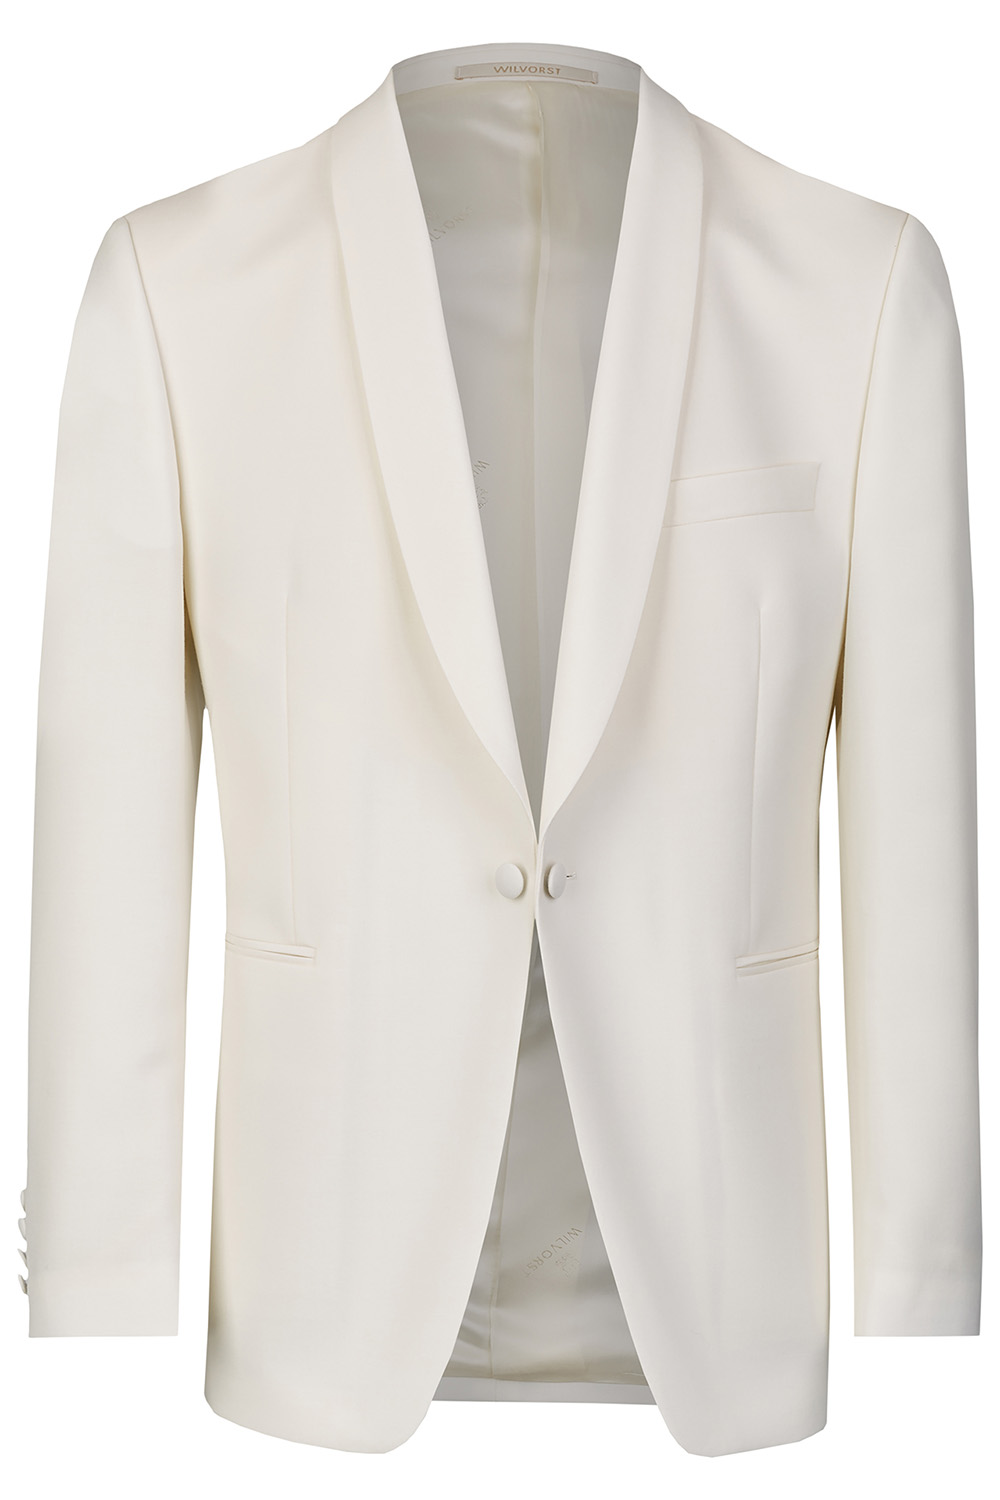 WILVORST fehér dinner jacket 401824-1 Modell 17701-0